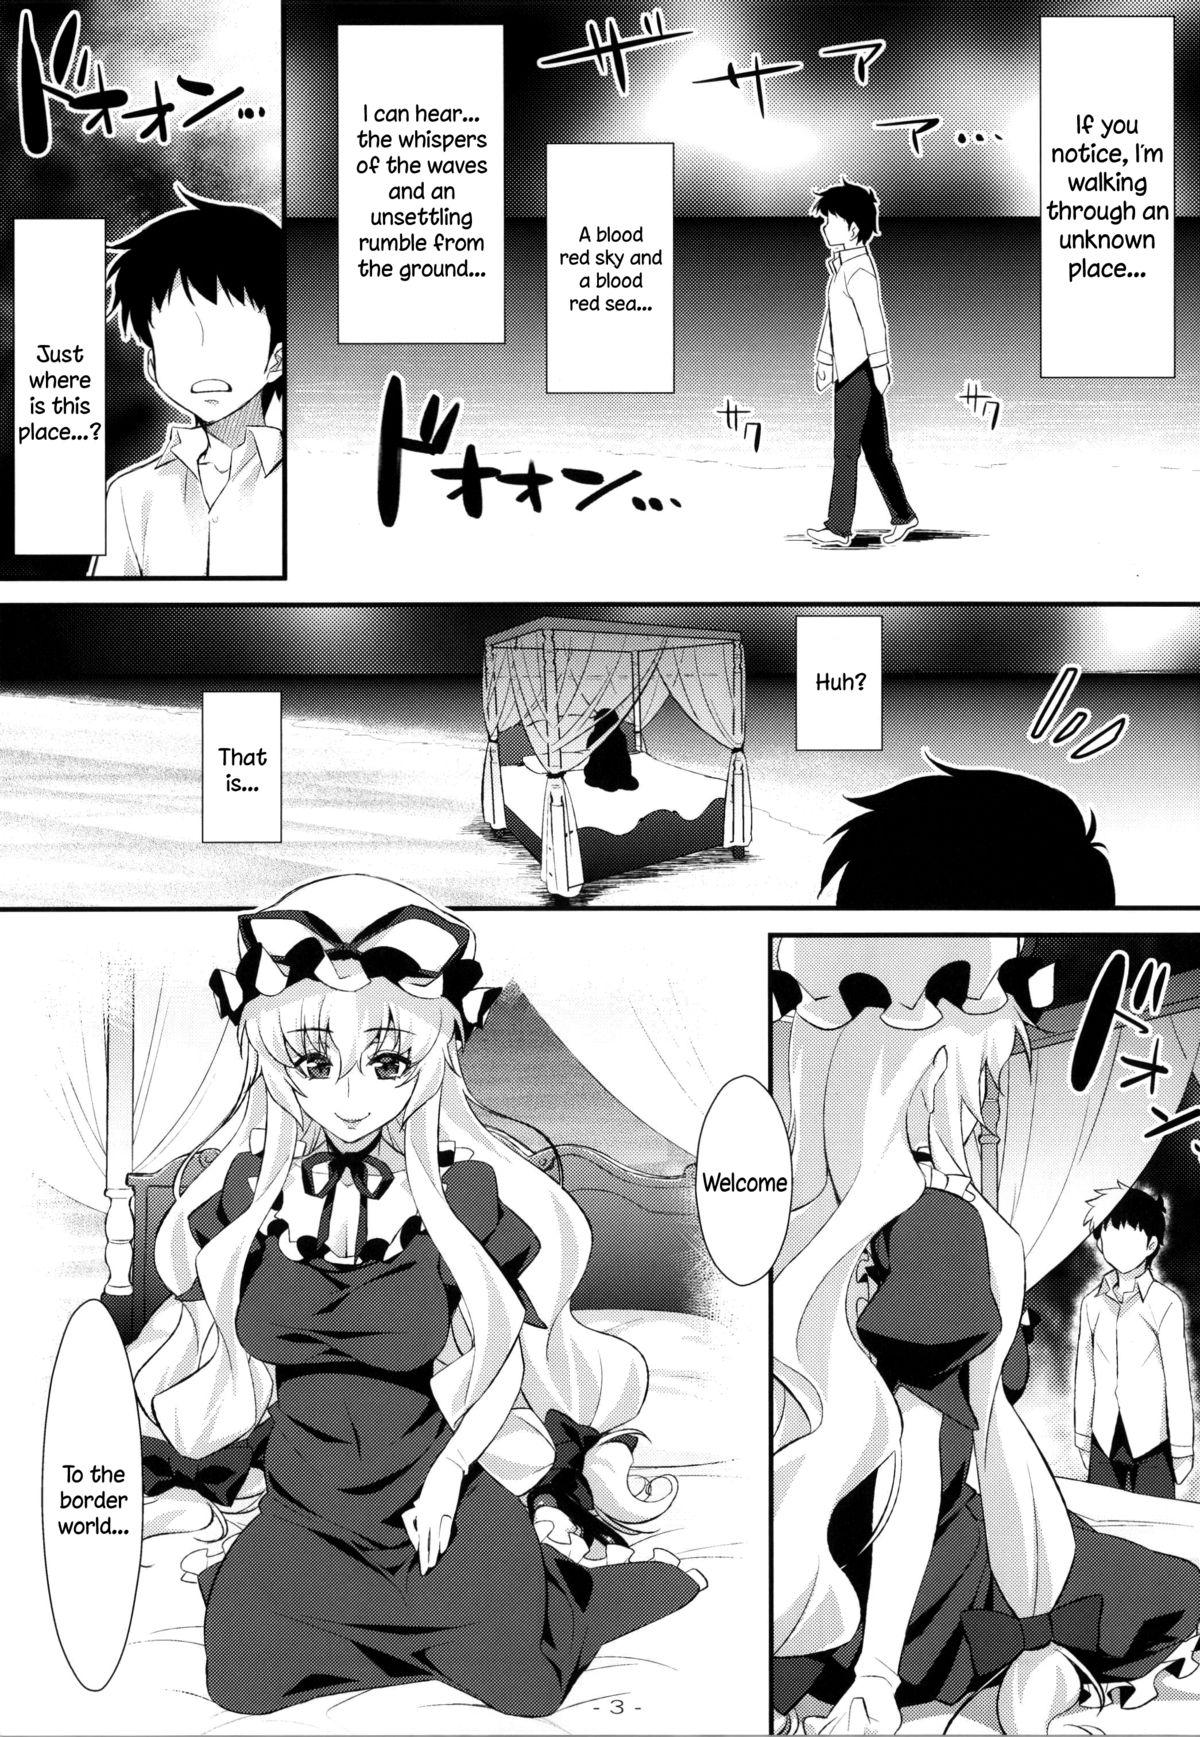 Gayemo Yasei no Chijo ga Arawareta! 9 | A Wild Nymphomaniac Appeared! 9 - Touhou project Hidden Cam - Page 2